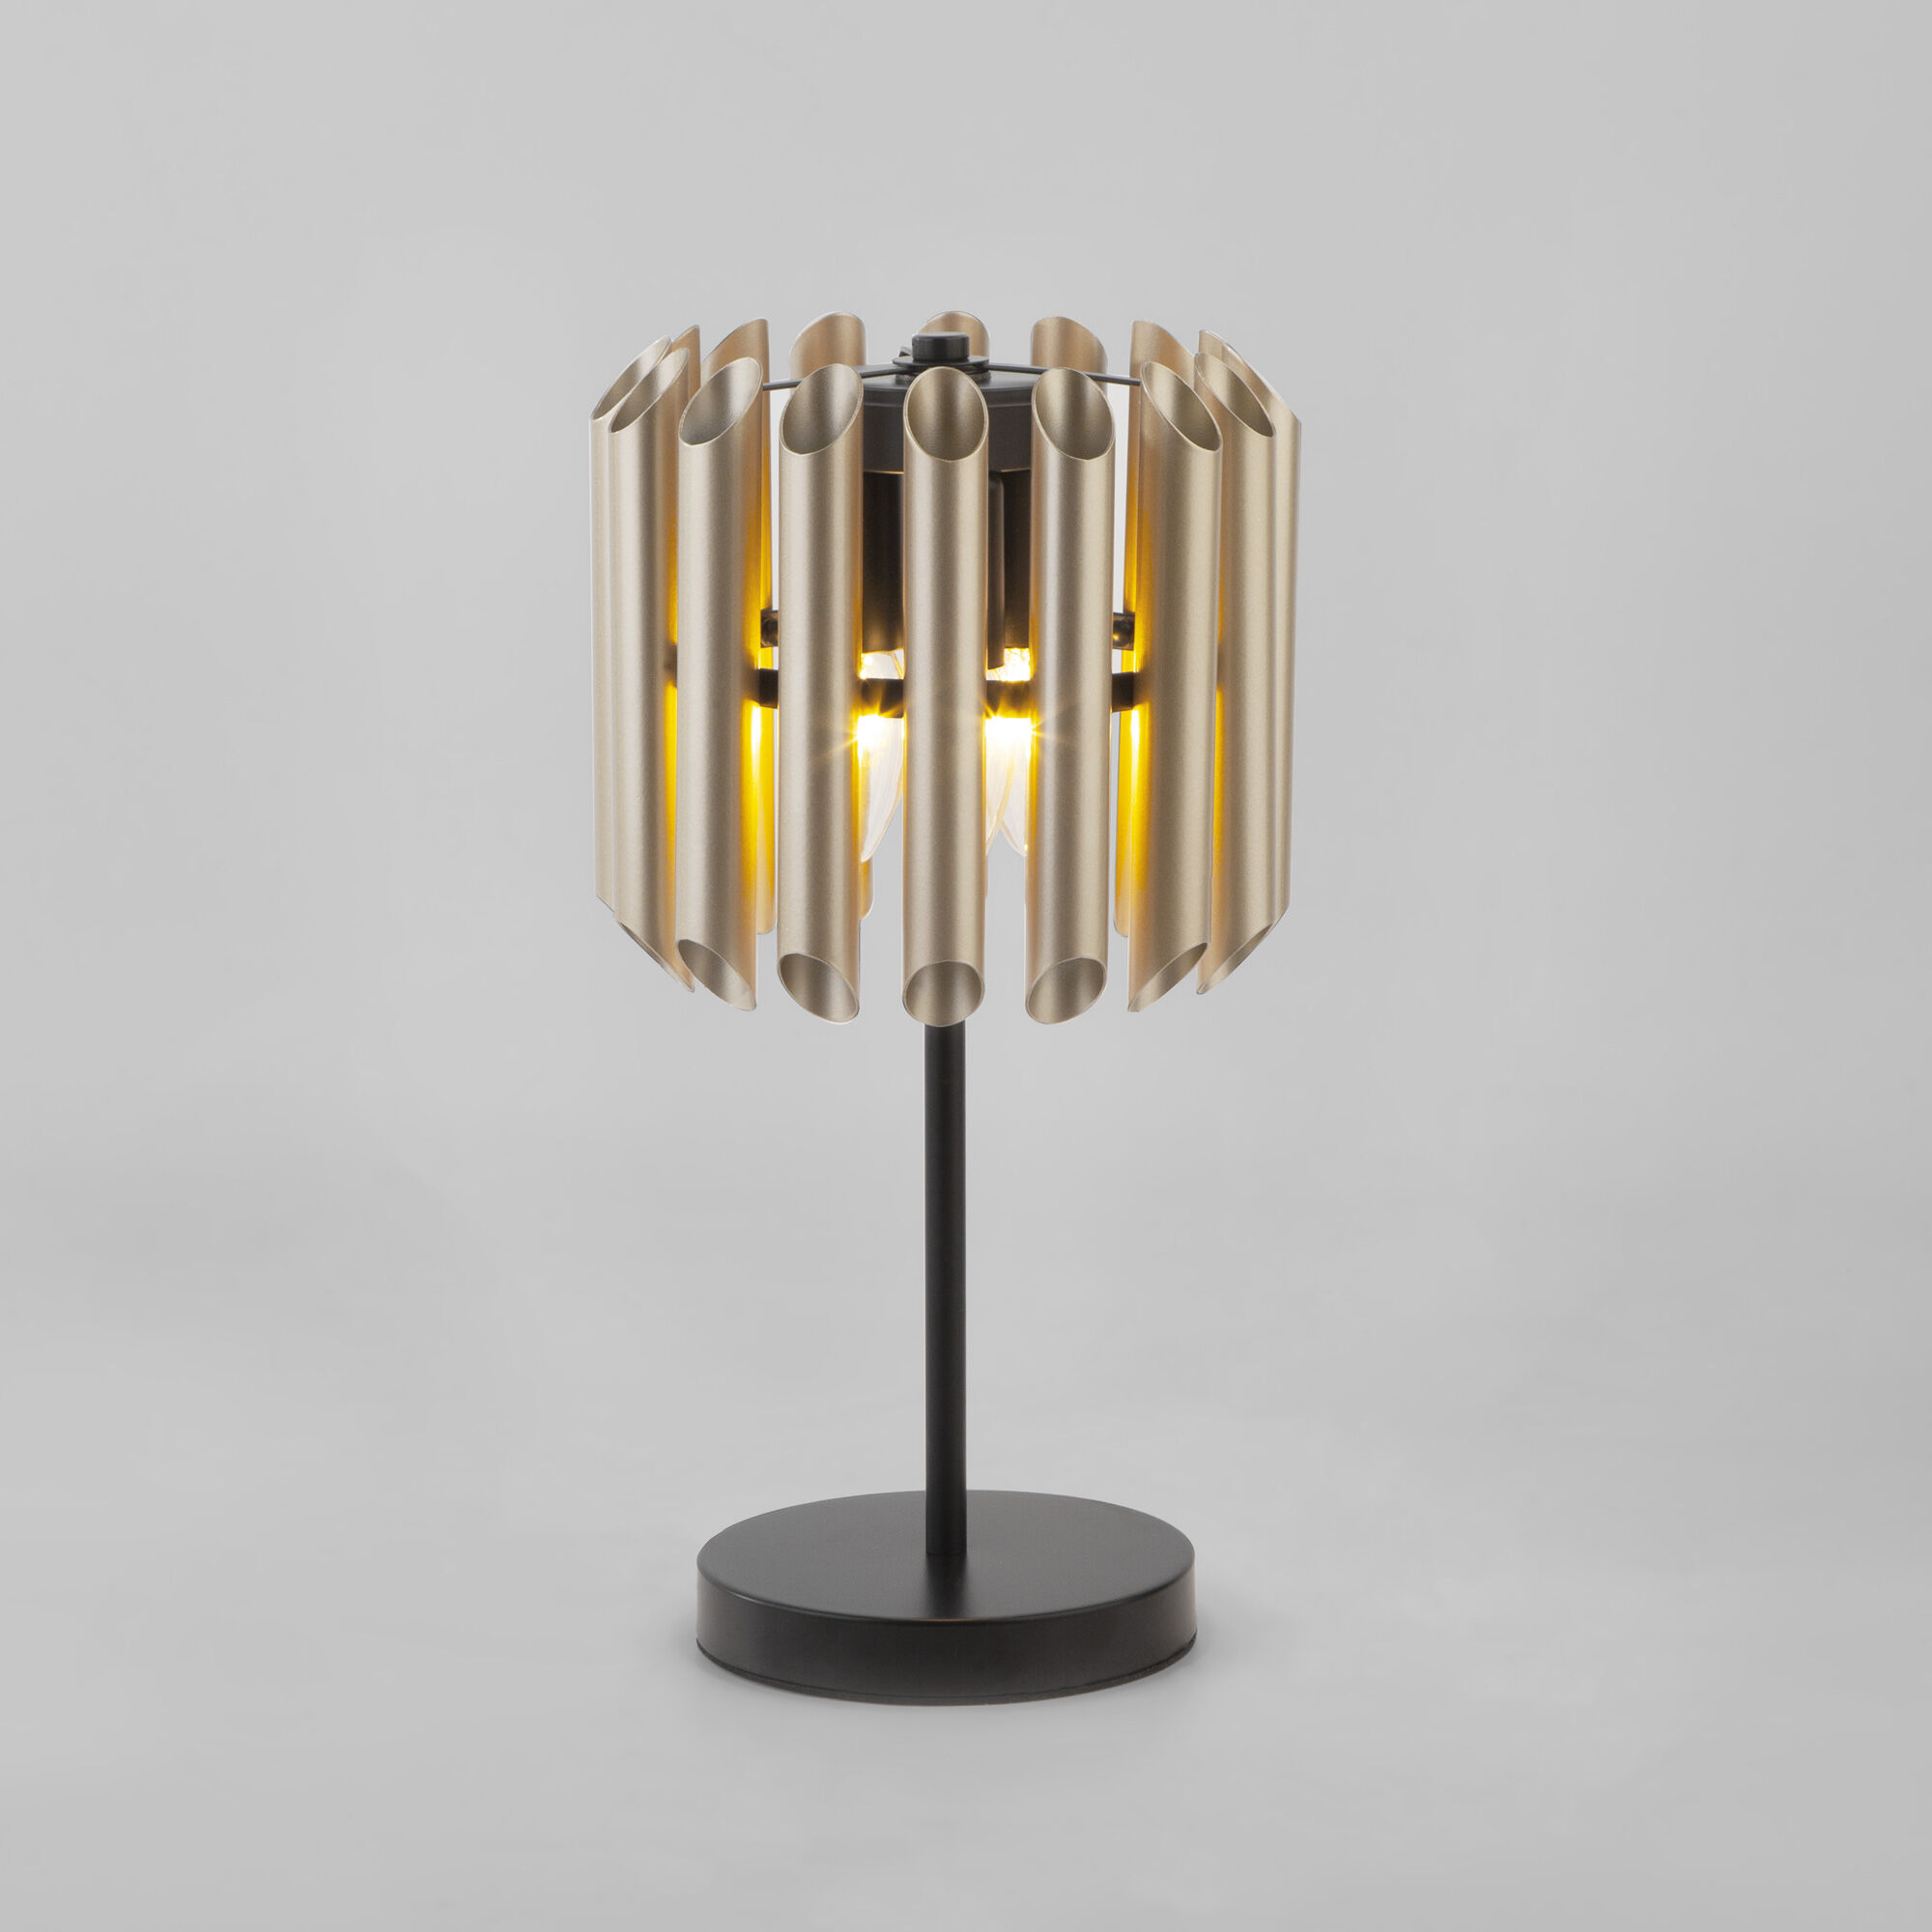 Настольный светильник с металлическим плафоном Bogate's Castellie 01124/3. Фото 1